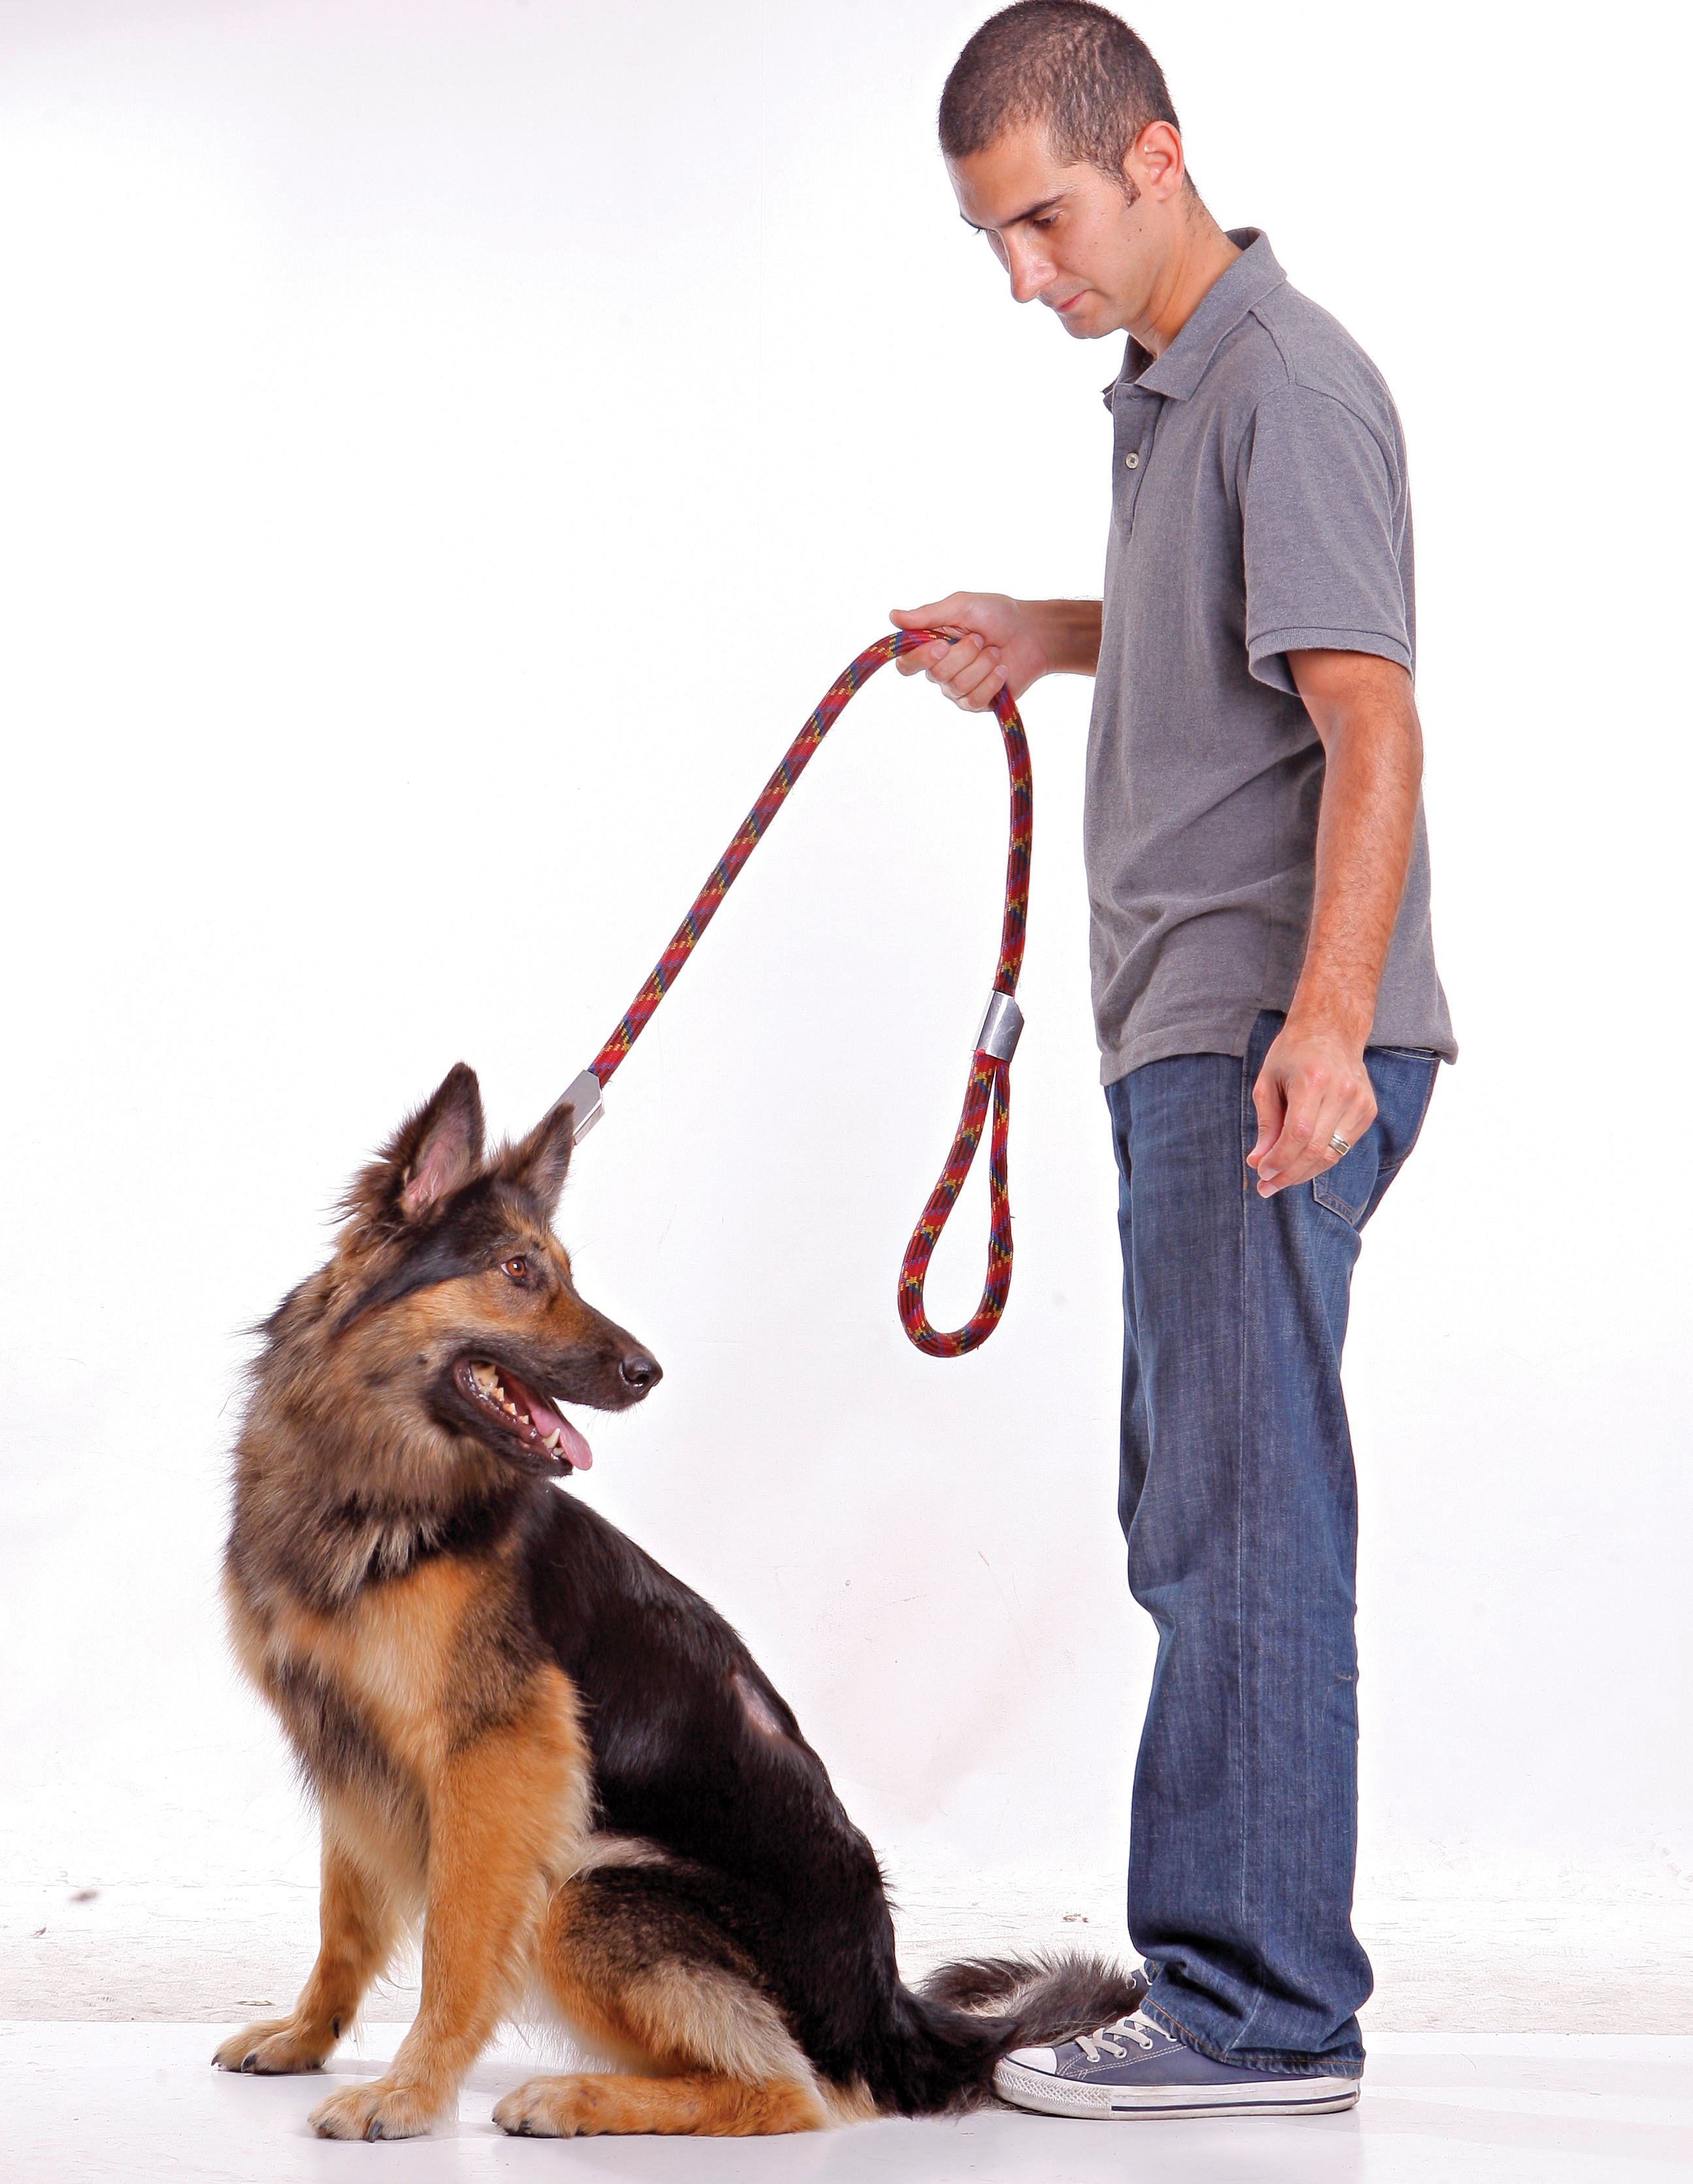 چندین نهاد و سازمان در جمع آوری سگ ها نقش دارند